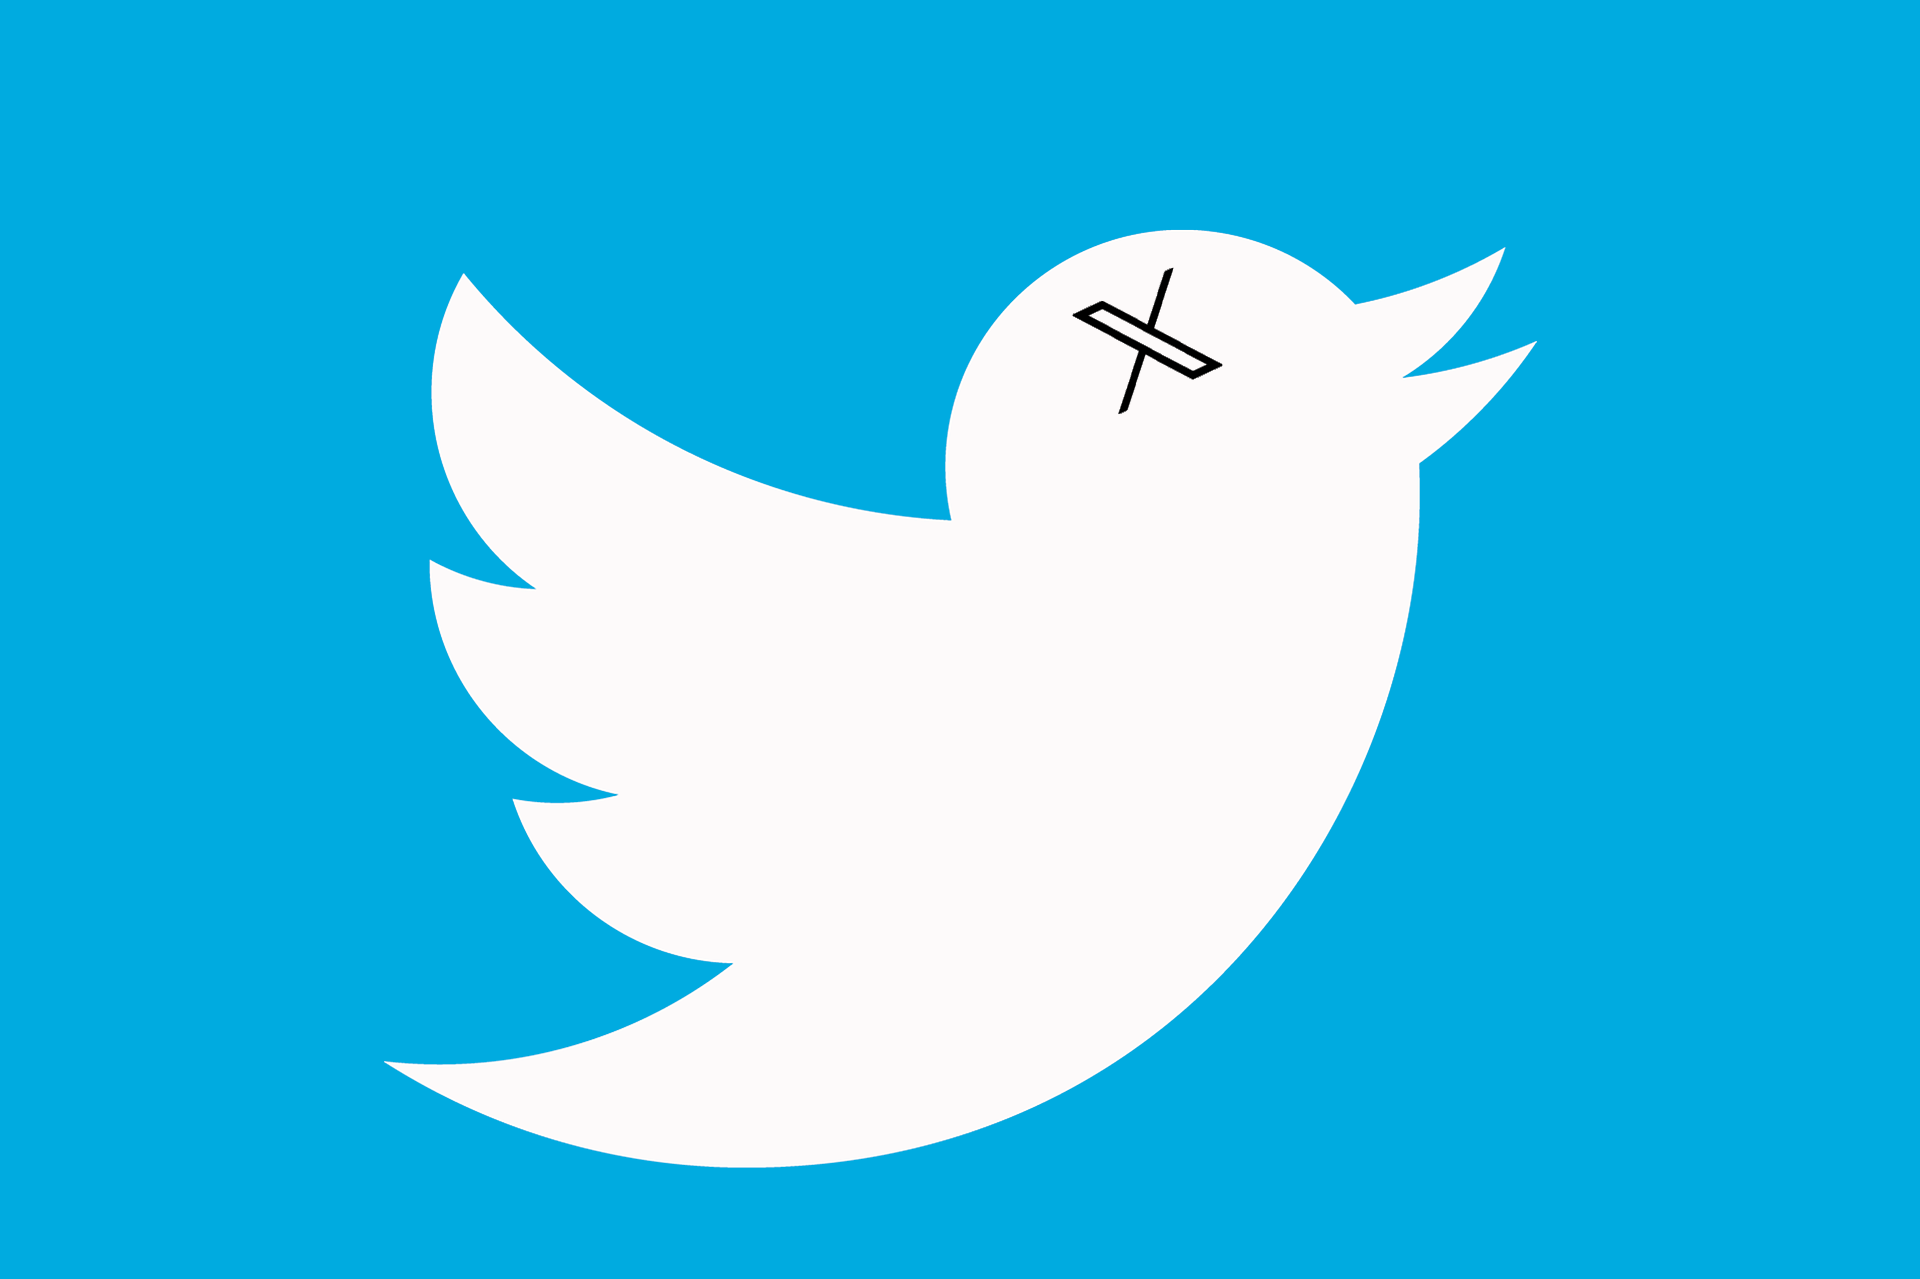 Adiós al icónico pájaro azul, anuncian fin del nombre de Twitter, una X llegó a remplazarlo